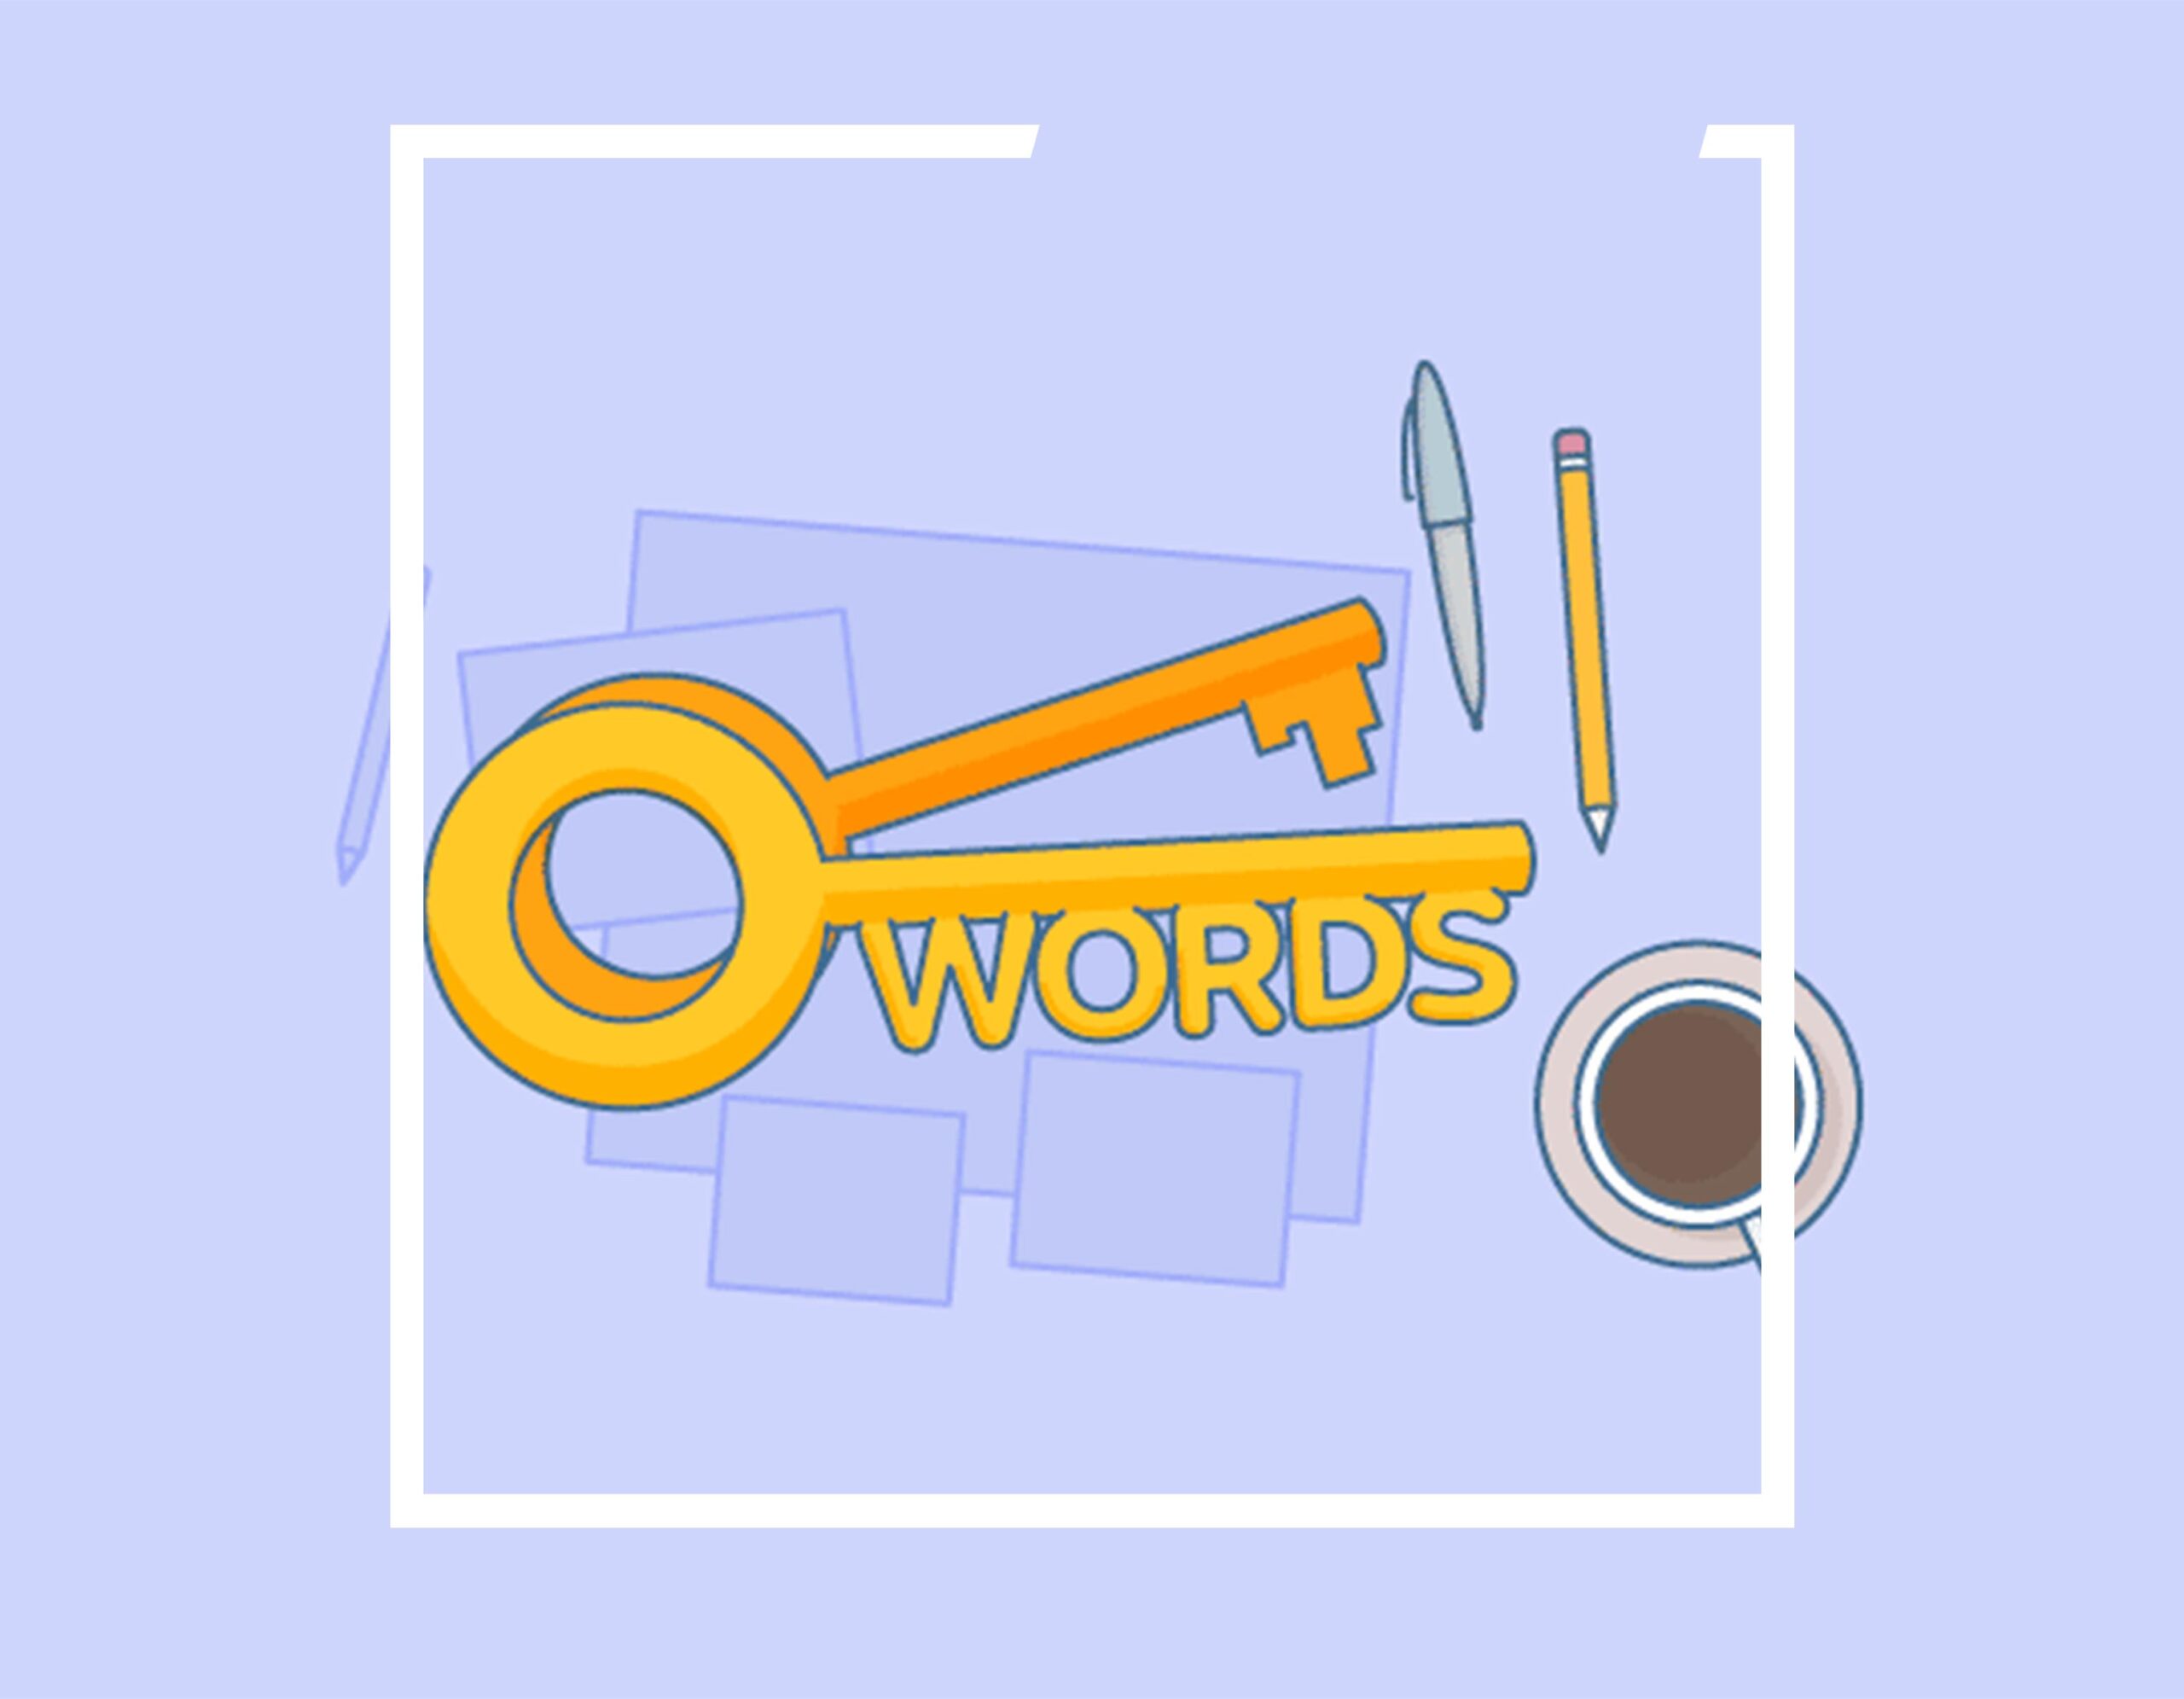 تحقیق کلمات کلیدی با هوش مصنوعی پیدا کردن کلمات کلیدی پربازده